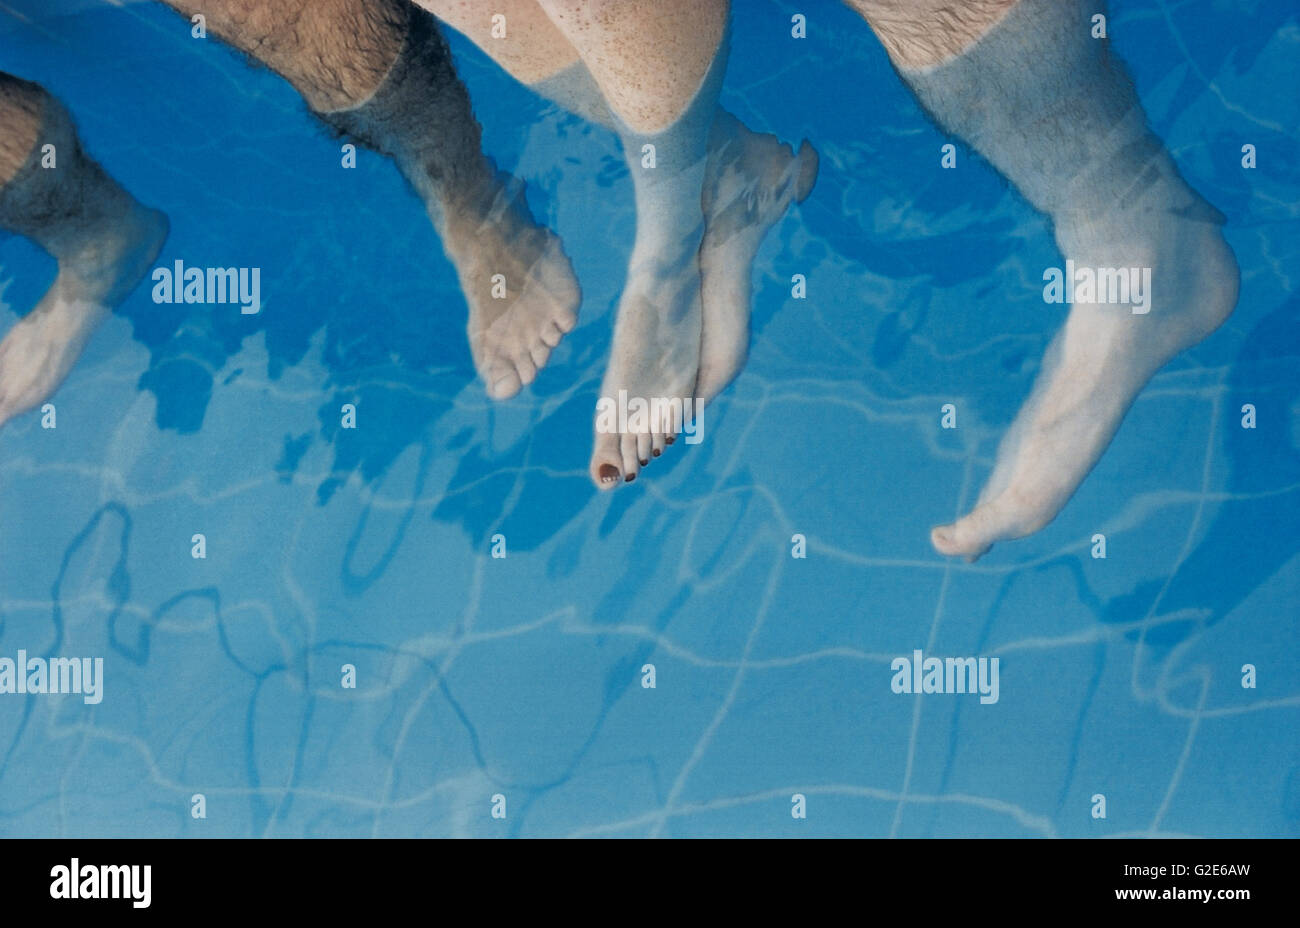 Piedi penzolanti in un pool Foto Stock